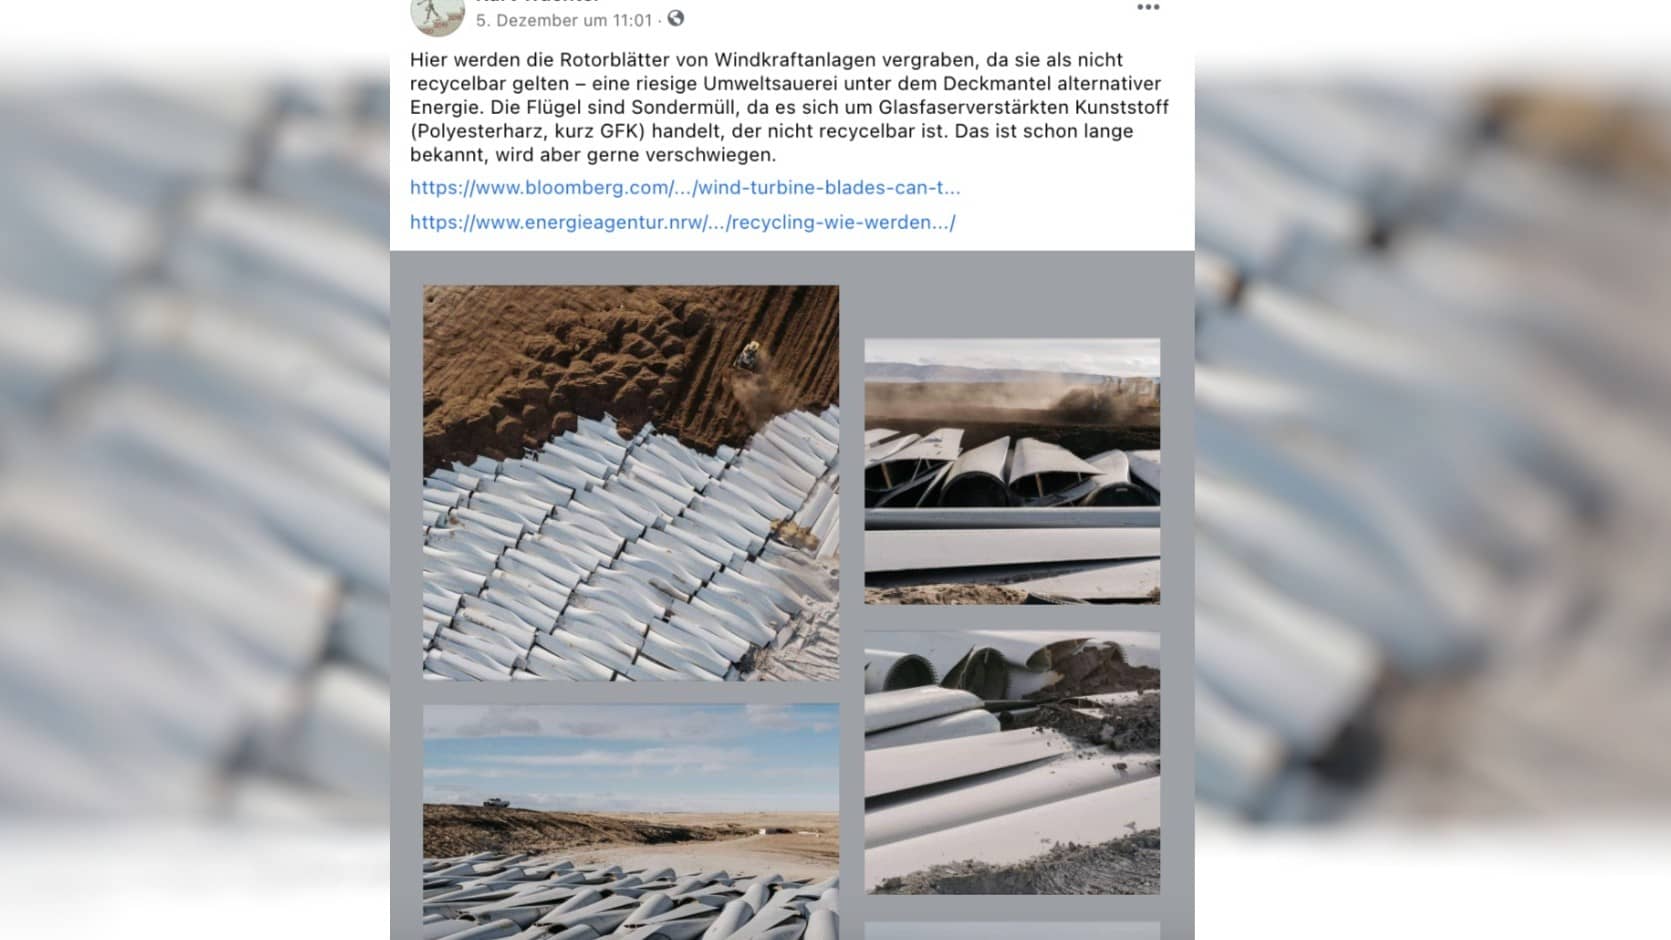 Mehrere Fotos aus Wyoming zeigen, wie Rotorblätter von Windkraftanlagen vergraben werden, da sie als nicht recycelbar gelten.